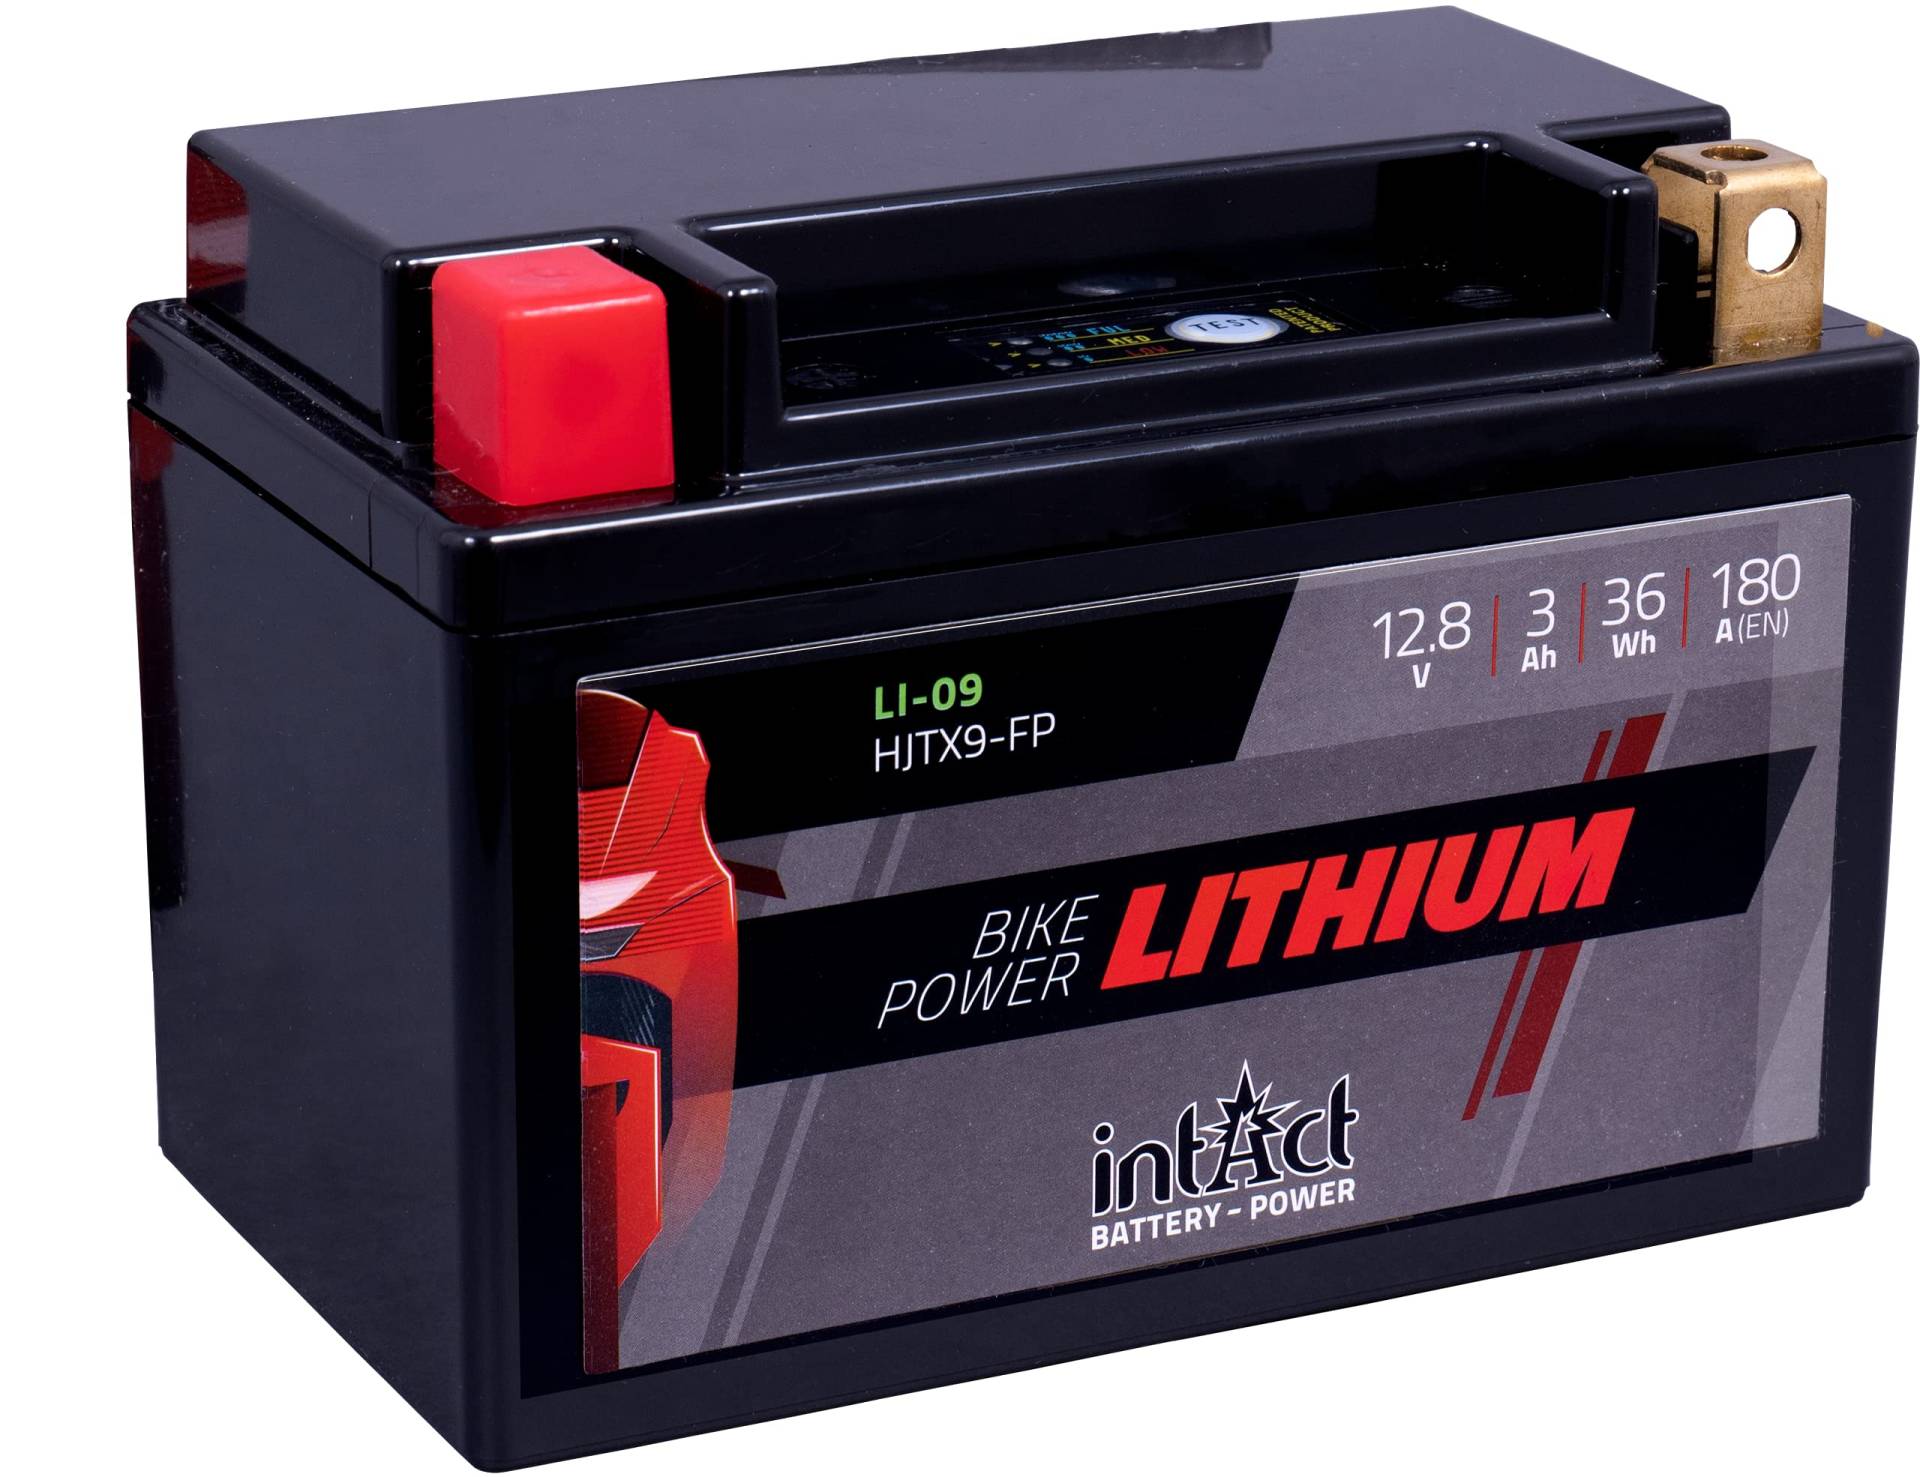 intAct - LITHIUM MOTORRADBATTERIE | Batterie für Roller, Motorrad, Quads uvm. Bis zu 75% Gewichtseinsparung | Bike-Power LI-09, HJTX9-FP, 12,8V Batterie, 3 AH (c10), 36 Wh, 180 A (CCA) | Maße: 150x87x105mm von Intact